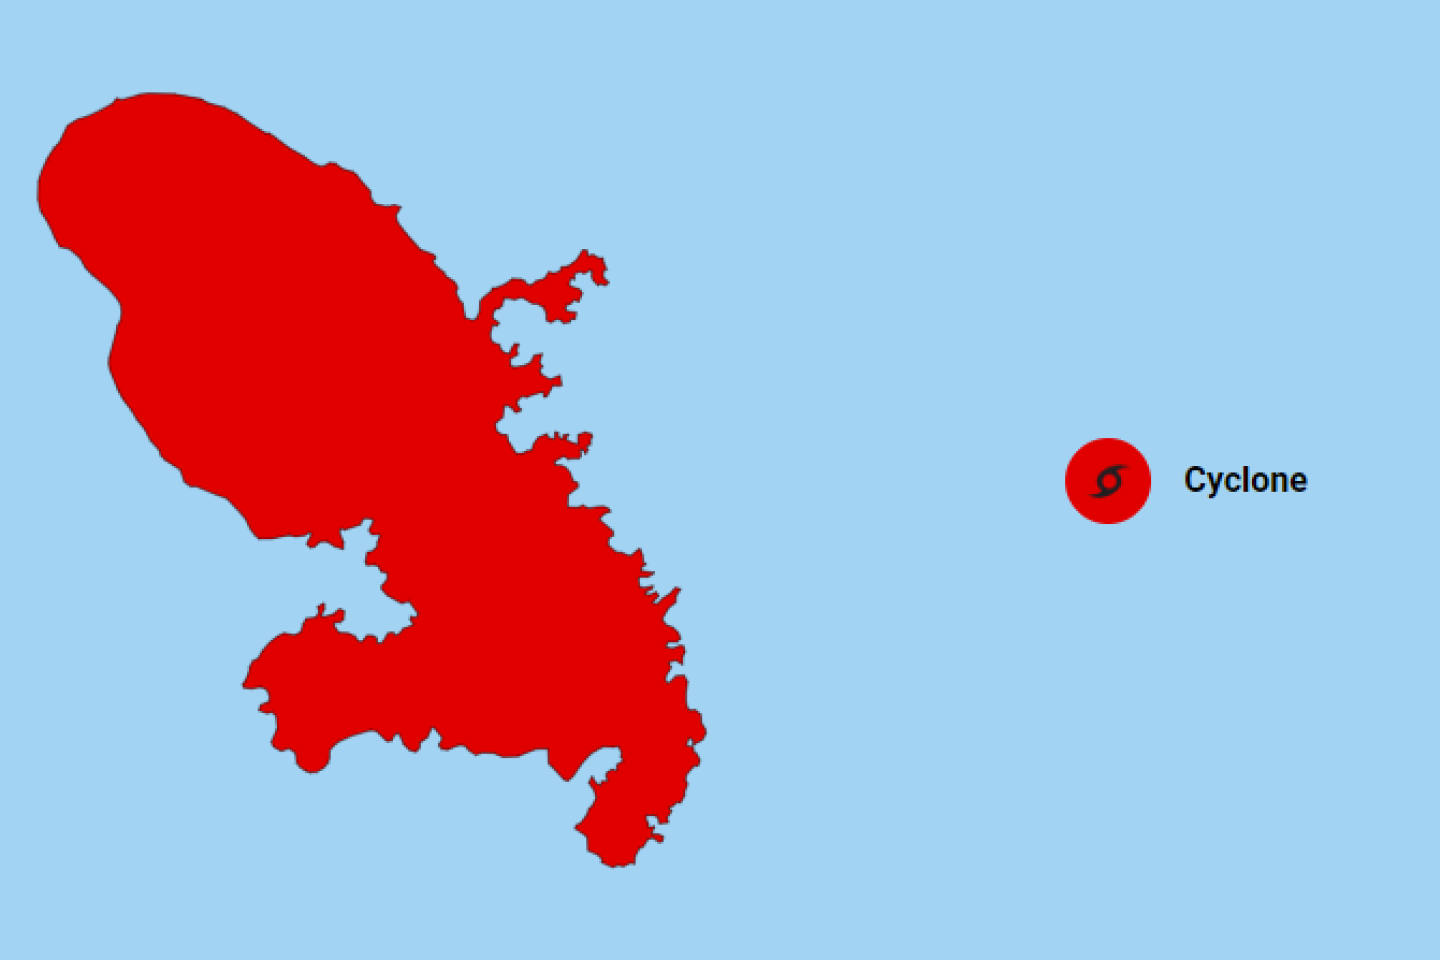 La Martinique en vigilance rouge cyclone à l’approche de la tempête Bret